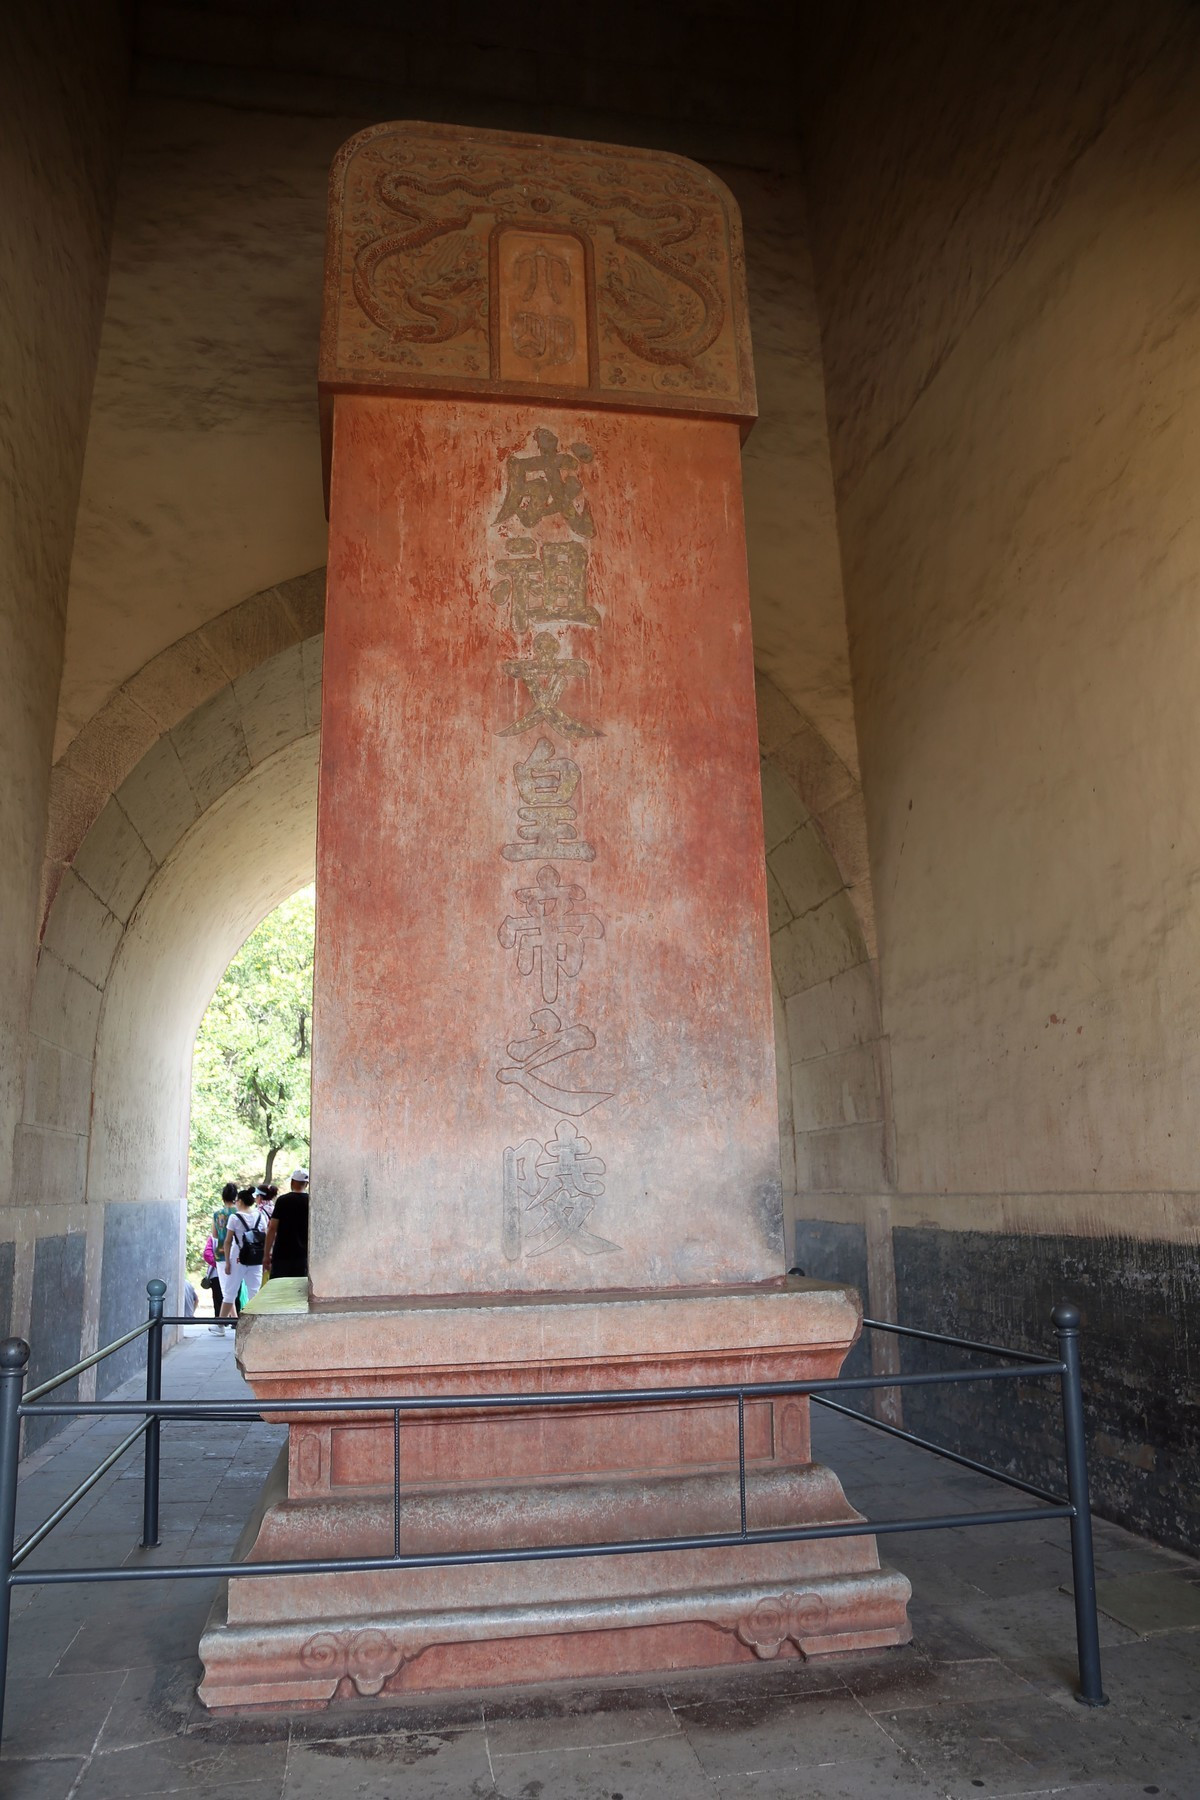 朱棣陵墓：十三陵中规模最大，郭沫若提议发掘，试掘三日匆匆撤离